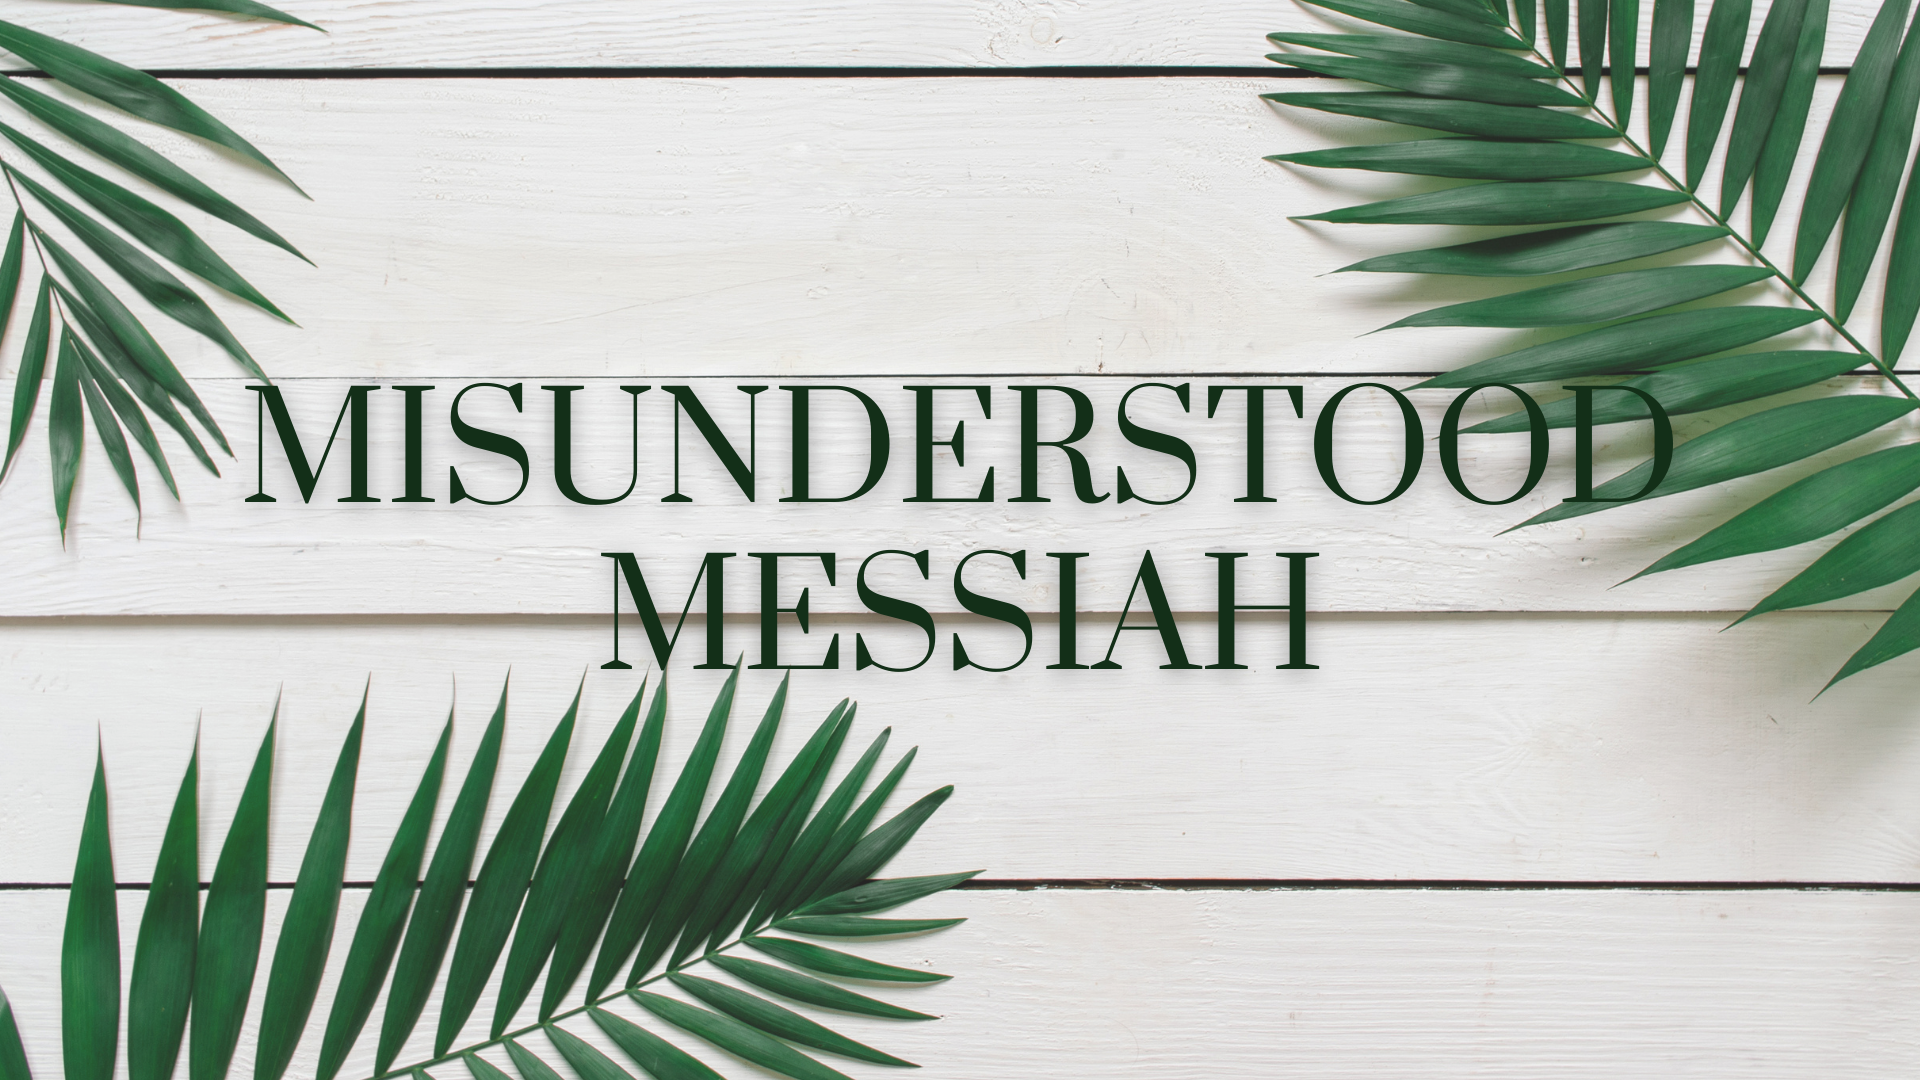 Misunderstood Messiah